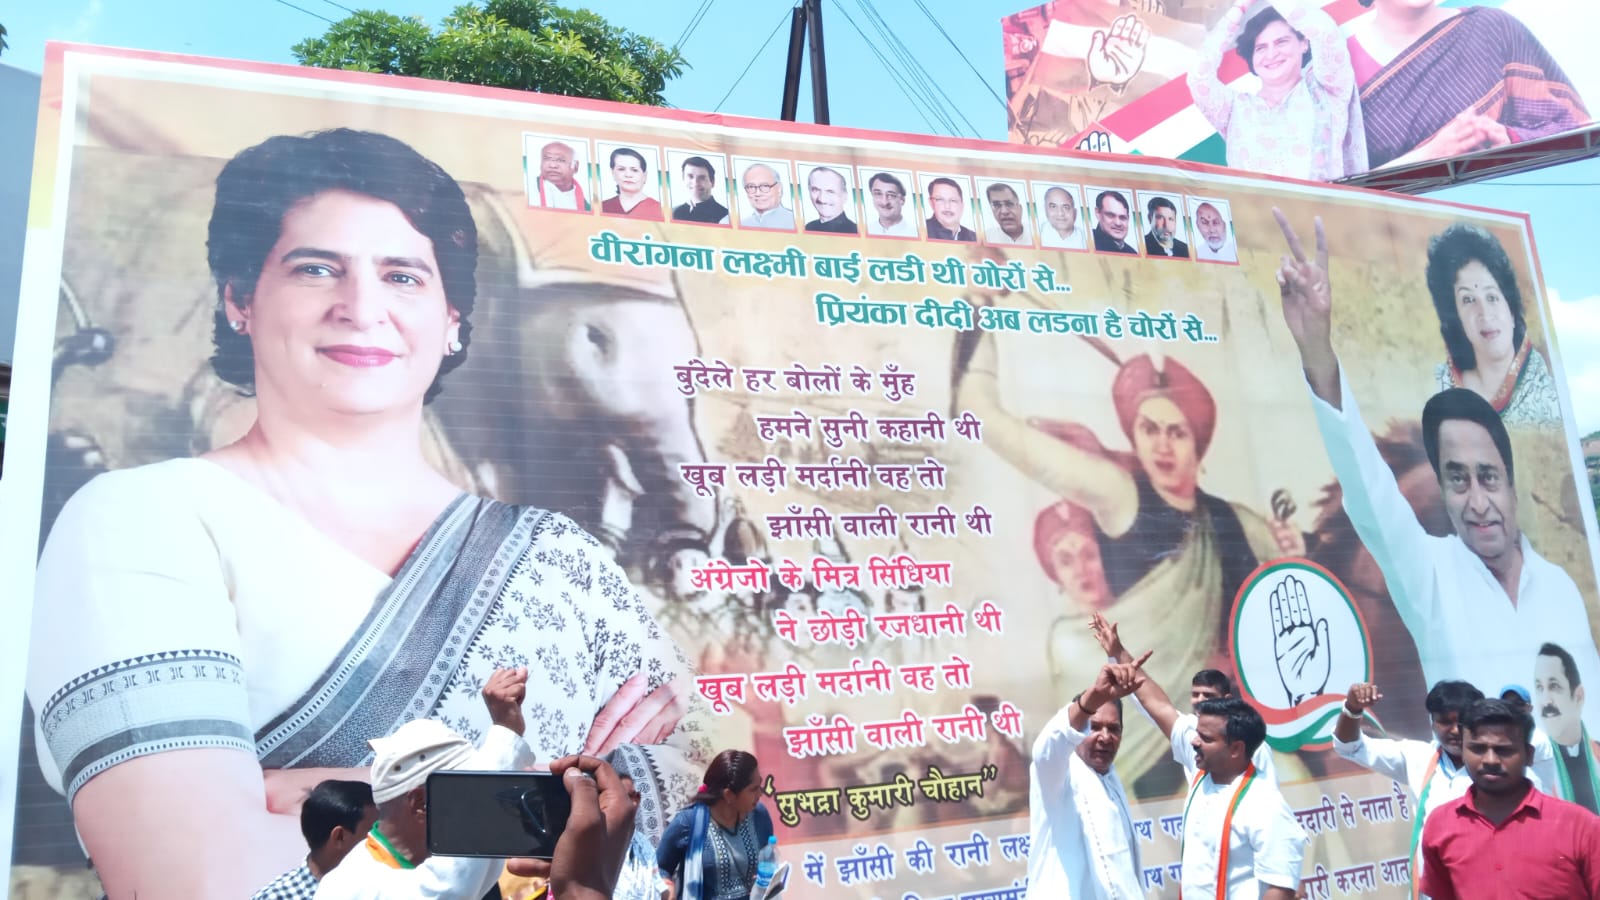 सियासत में रानी लक्ष्मीबाई की एंट्री, पुलिस ने हटाये सिंधिया के खिलाफ लगे विवादास्पद पोस्टर